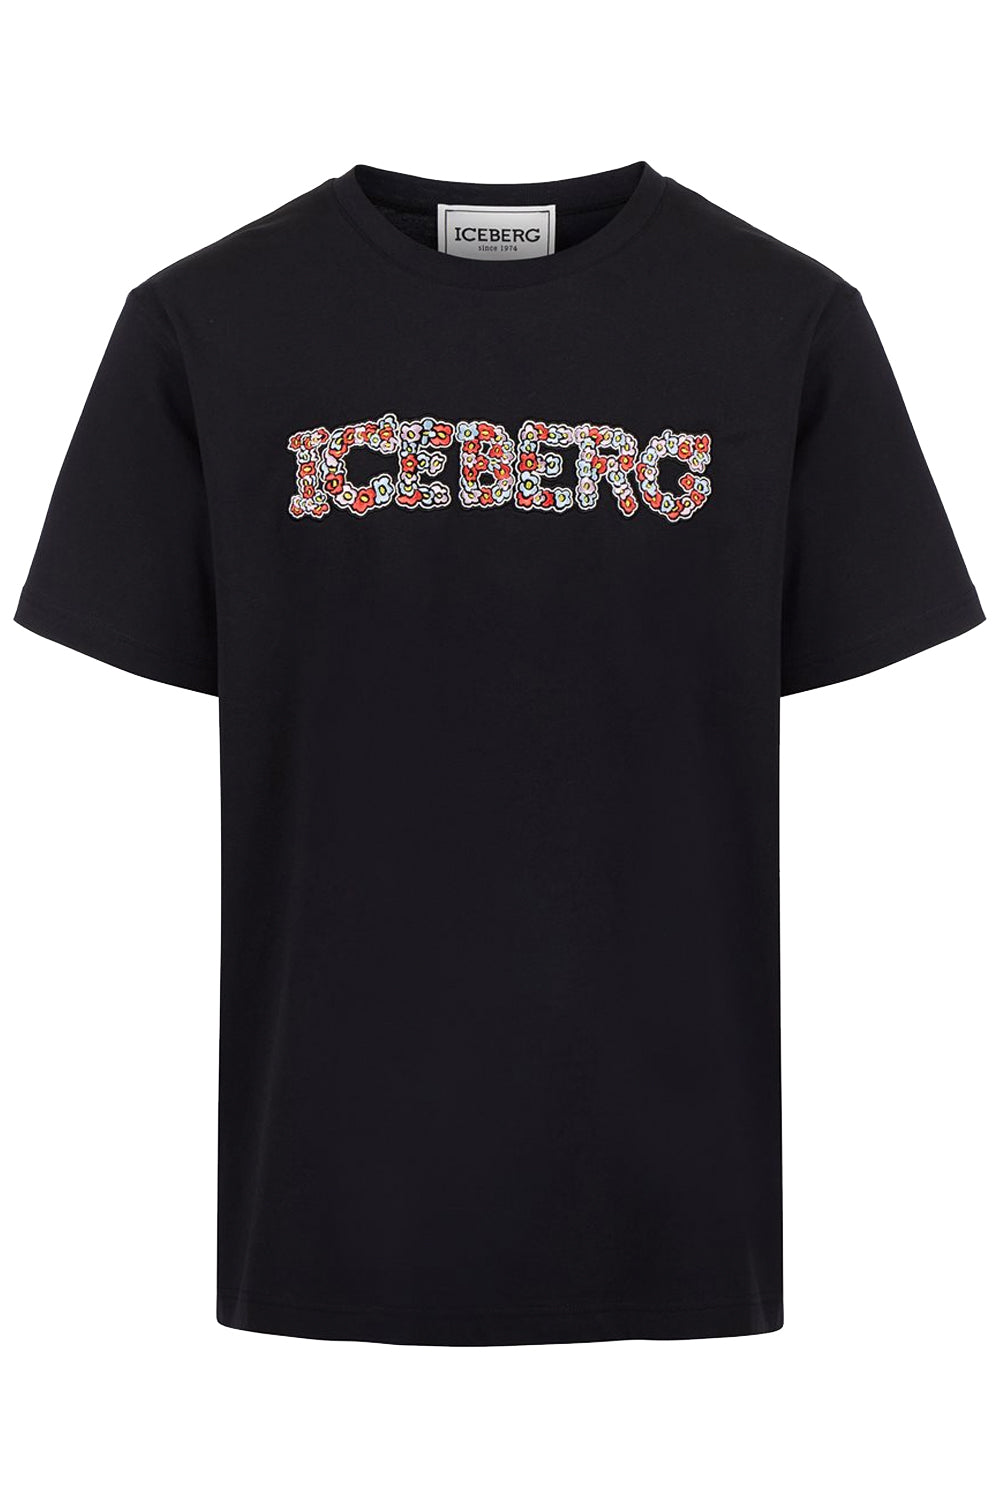 Image of ICEBERG T-shirt con logo floreale